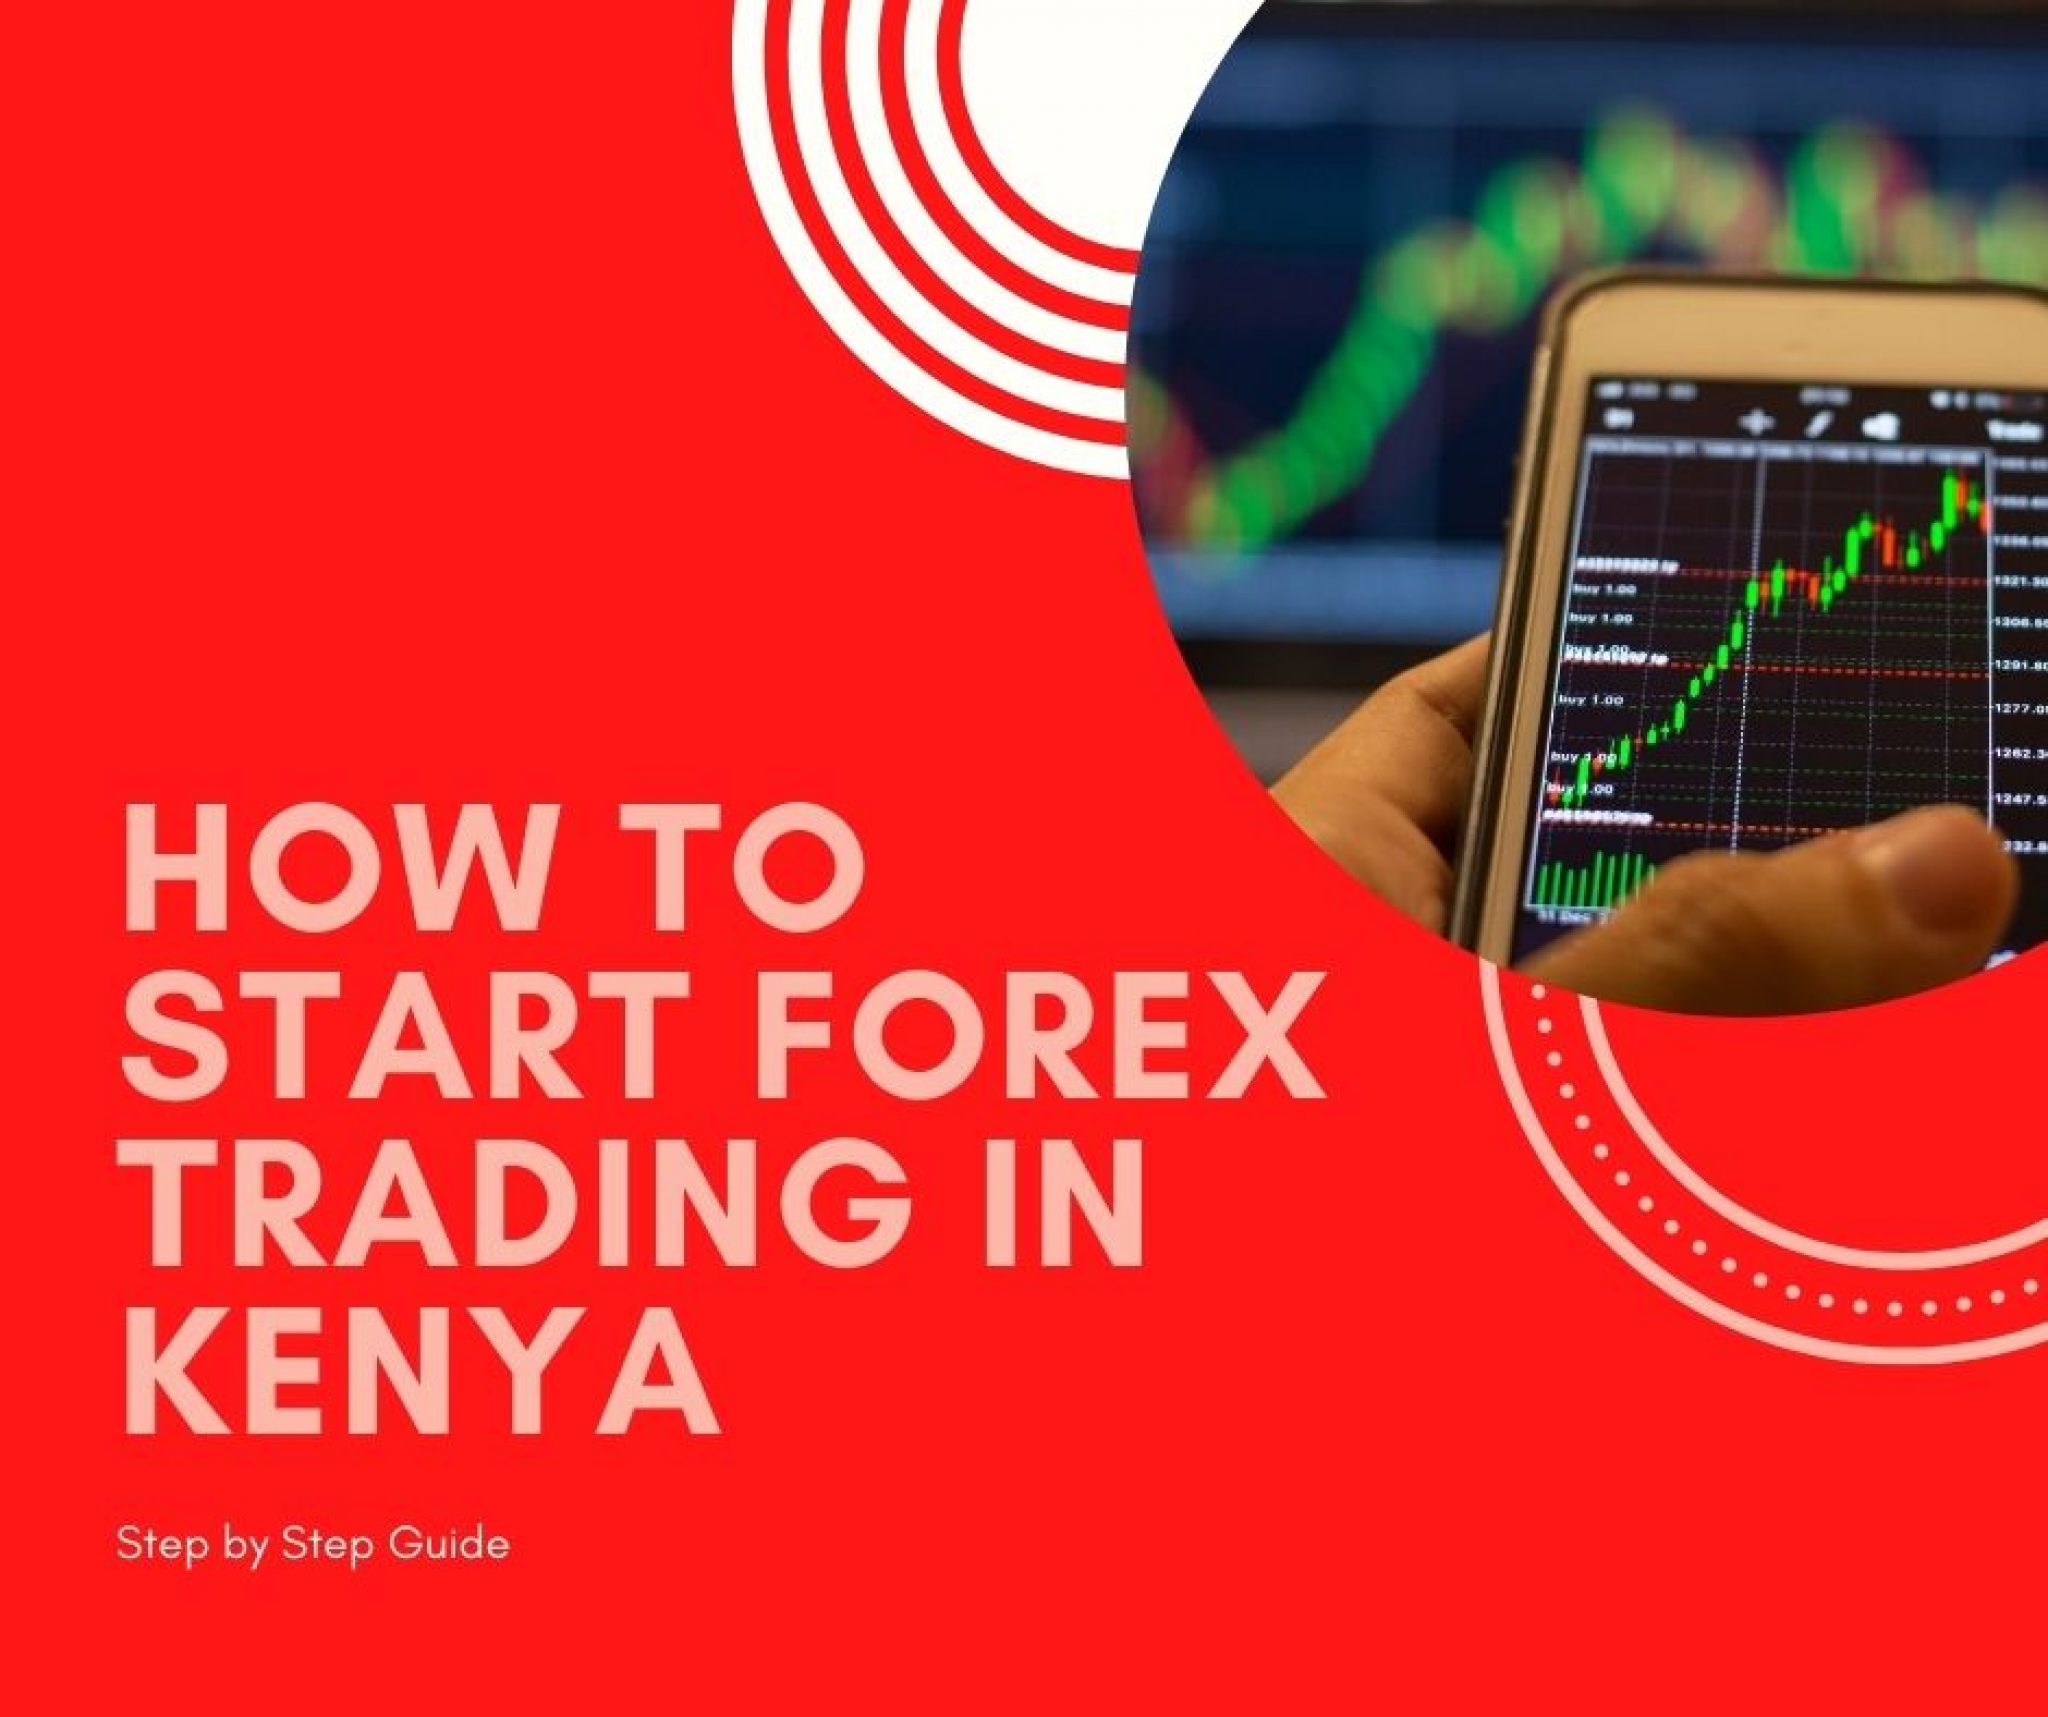 Forex trading training in kenya